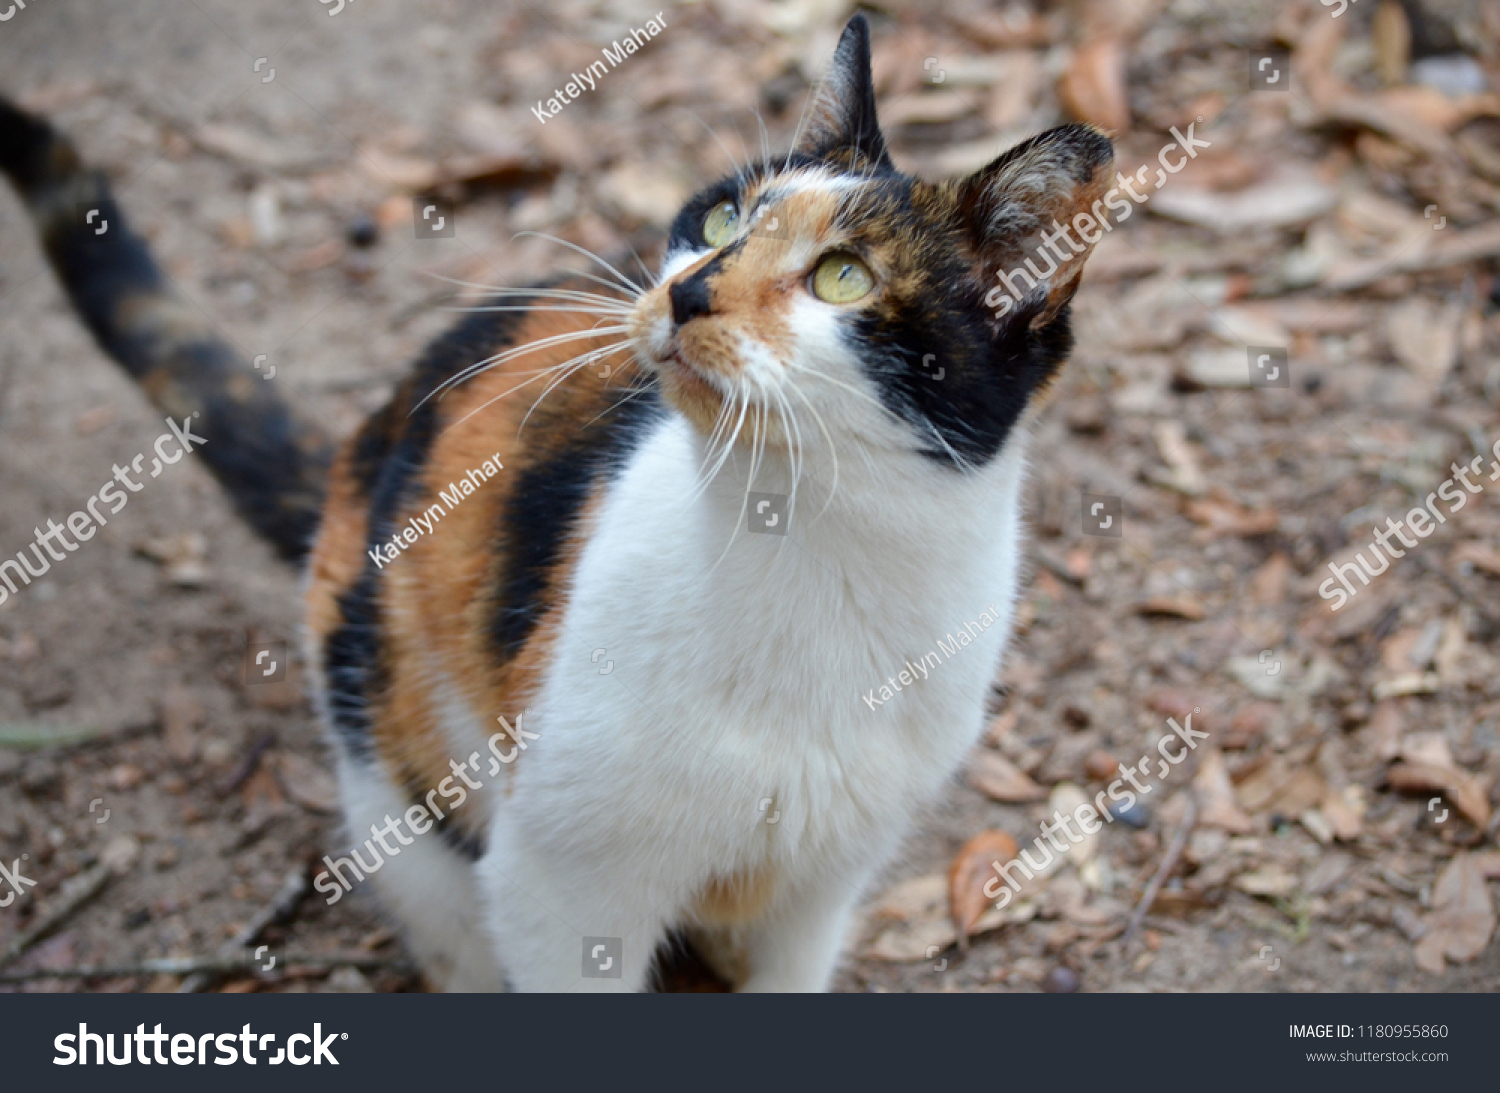 Feral Calico Cat Animals Wildlife Stock Image 1180955860